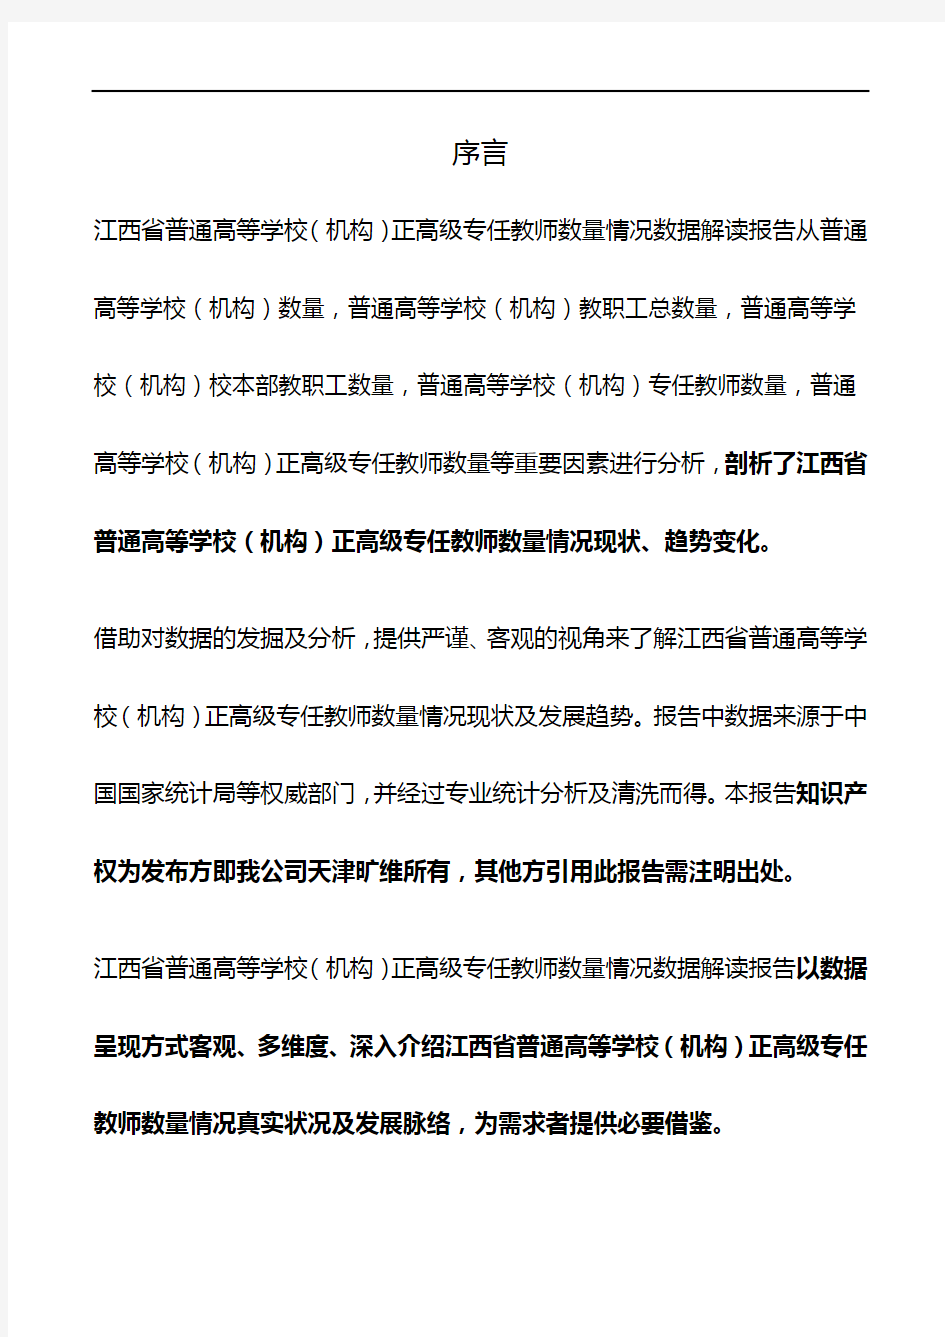 江西省普通高等学校(机构)正高级专任教师数量情况3年数据解读报告2019版